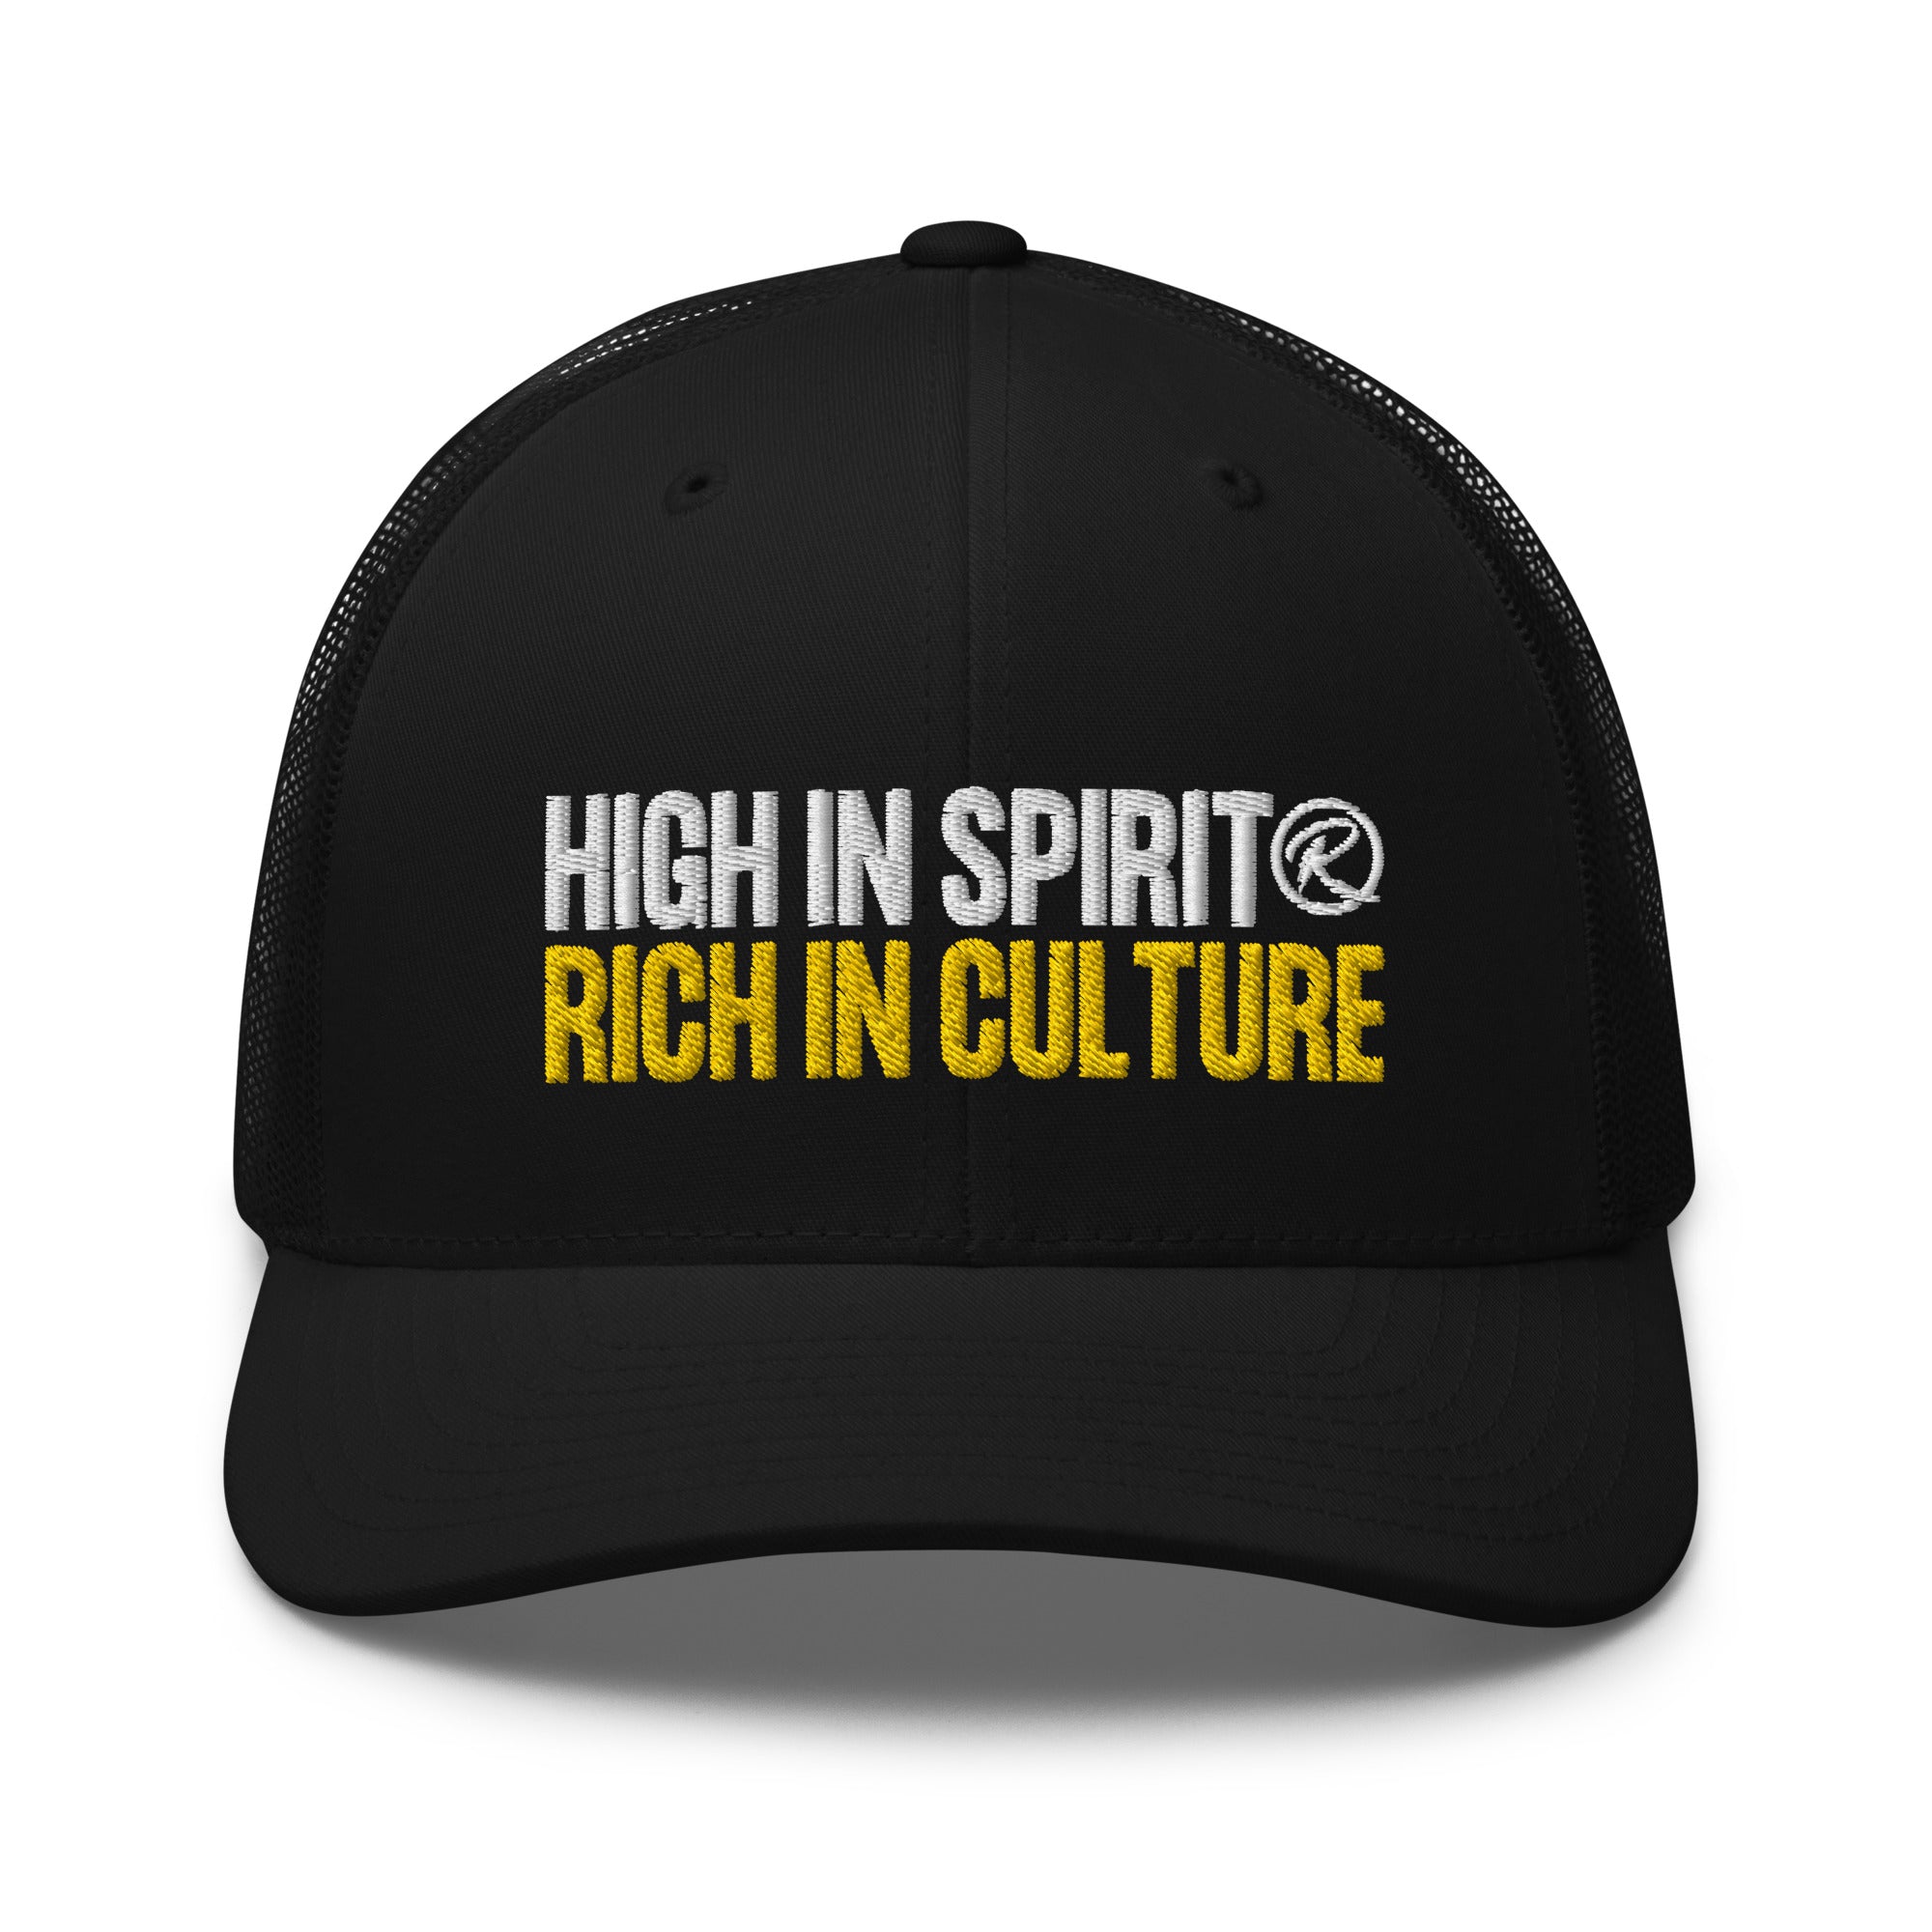 High in Spirit, Rich in Culture Mesh Cap